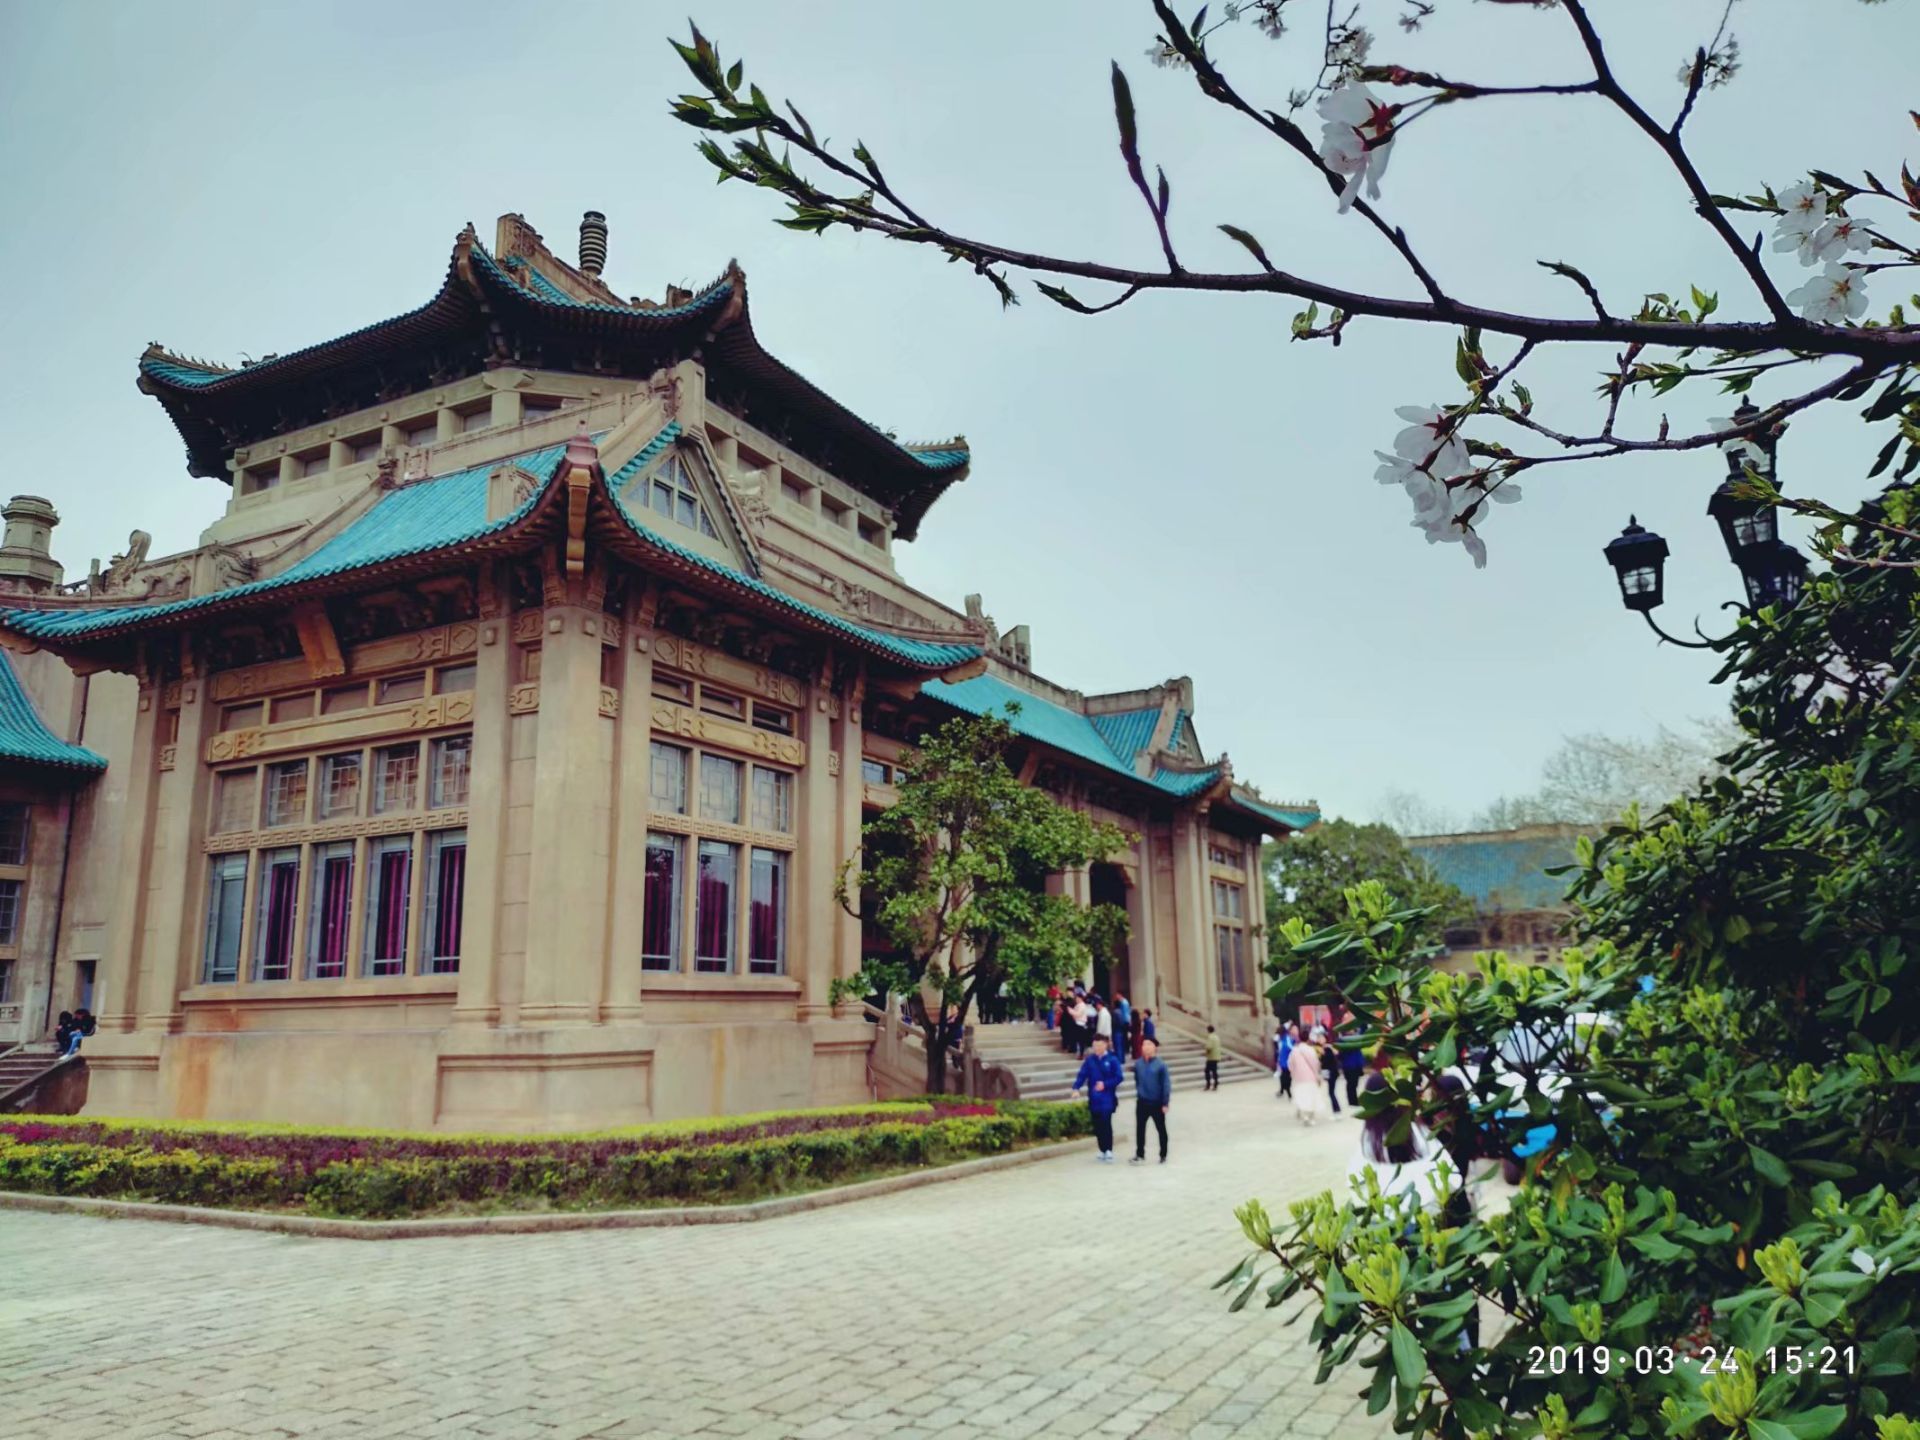 【携程攻略】武汉武汉大学景点,武汉大学作为中国最出名的高等学府之一，其风景也令人难忘。武汉大学…